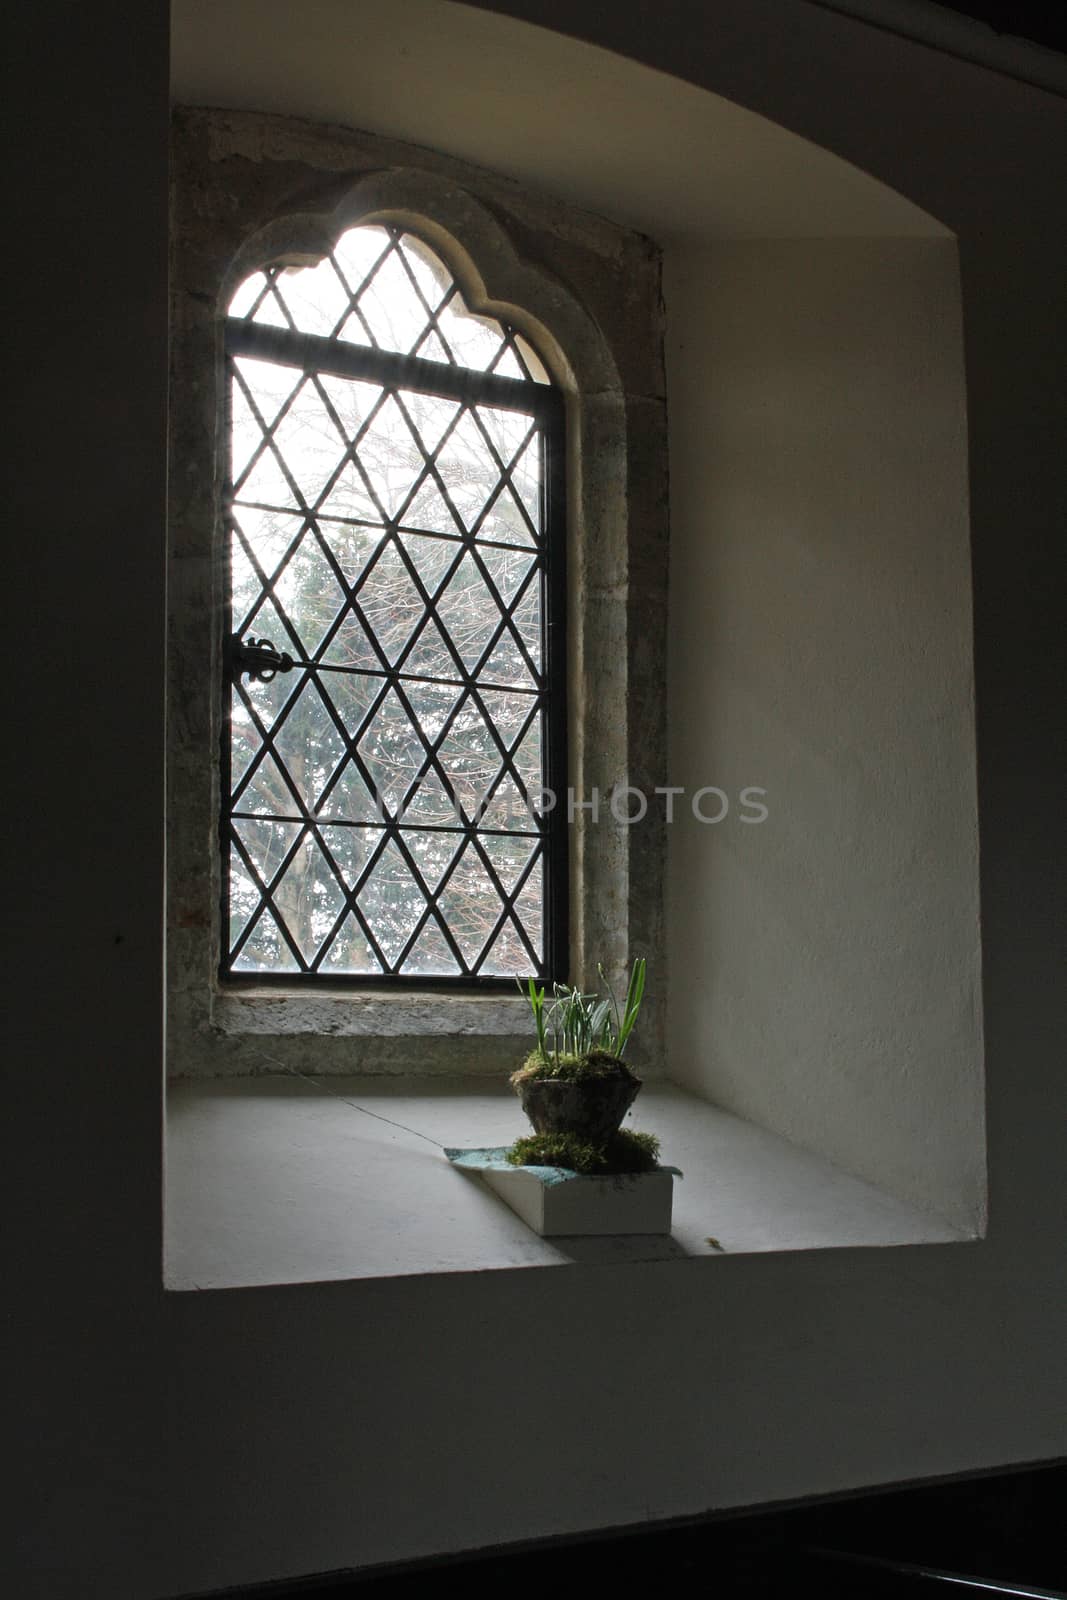 church glass window by potts312